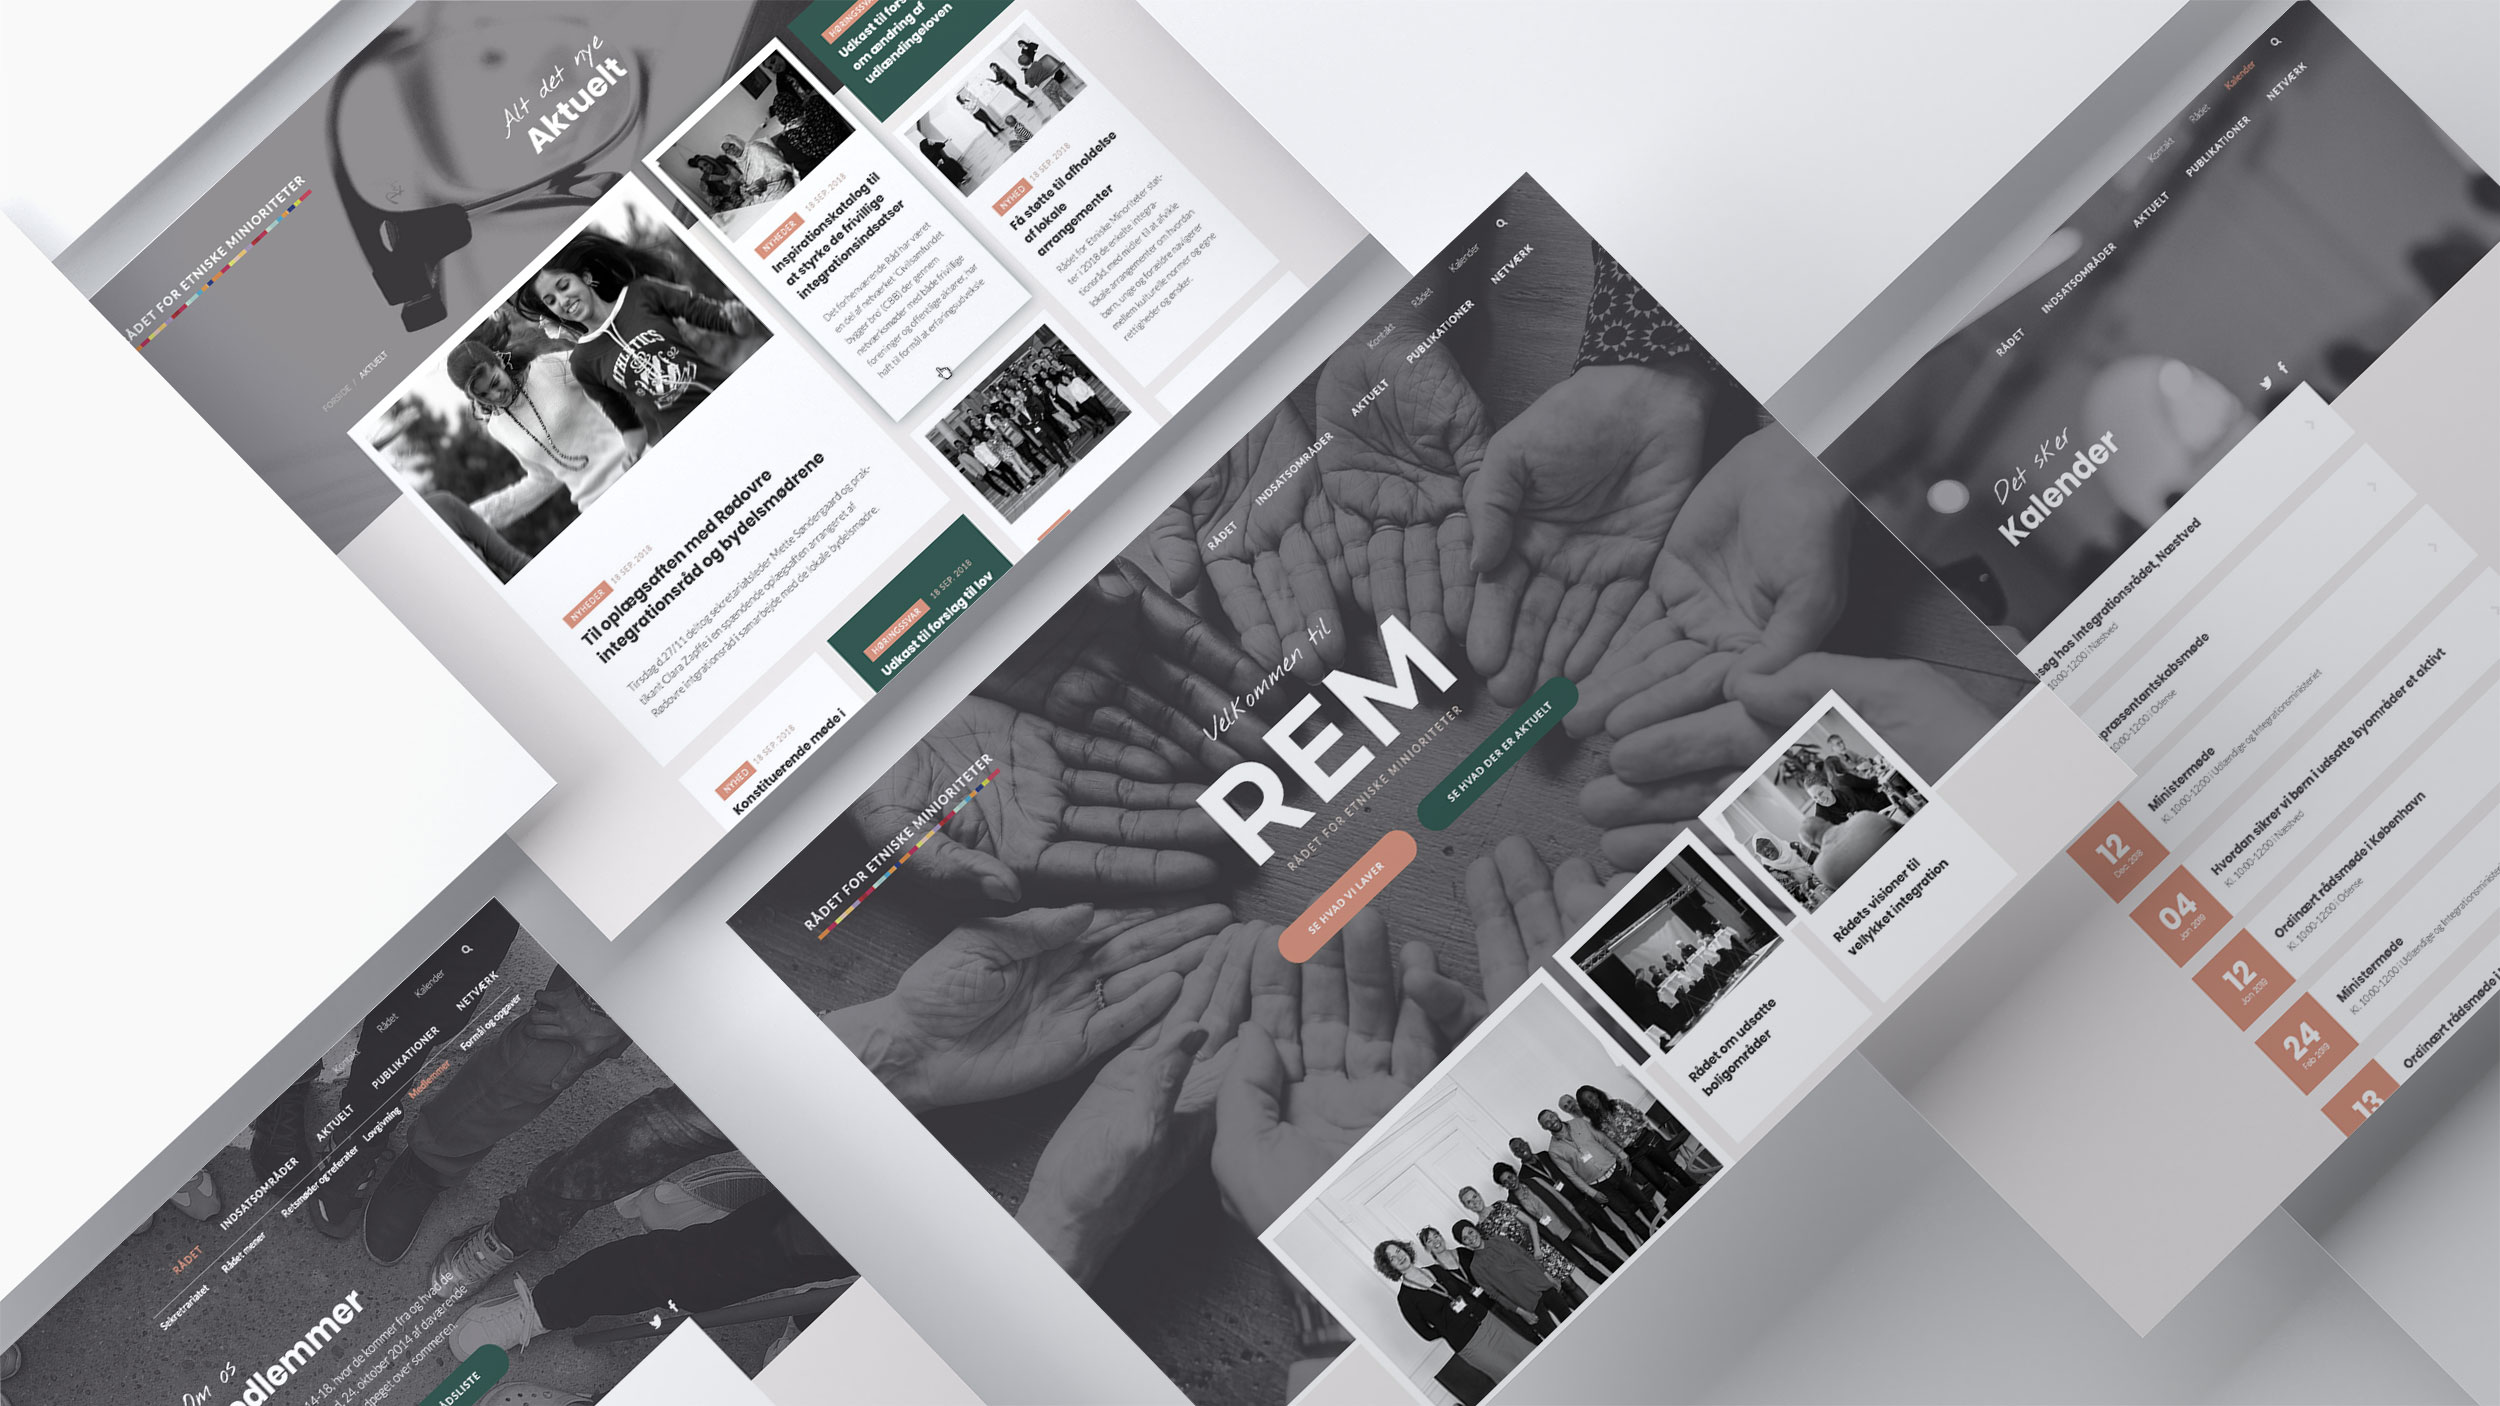 Website redesign af WOYE for Rådet for Etniske minioriteter